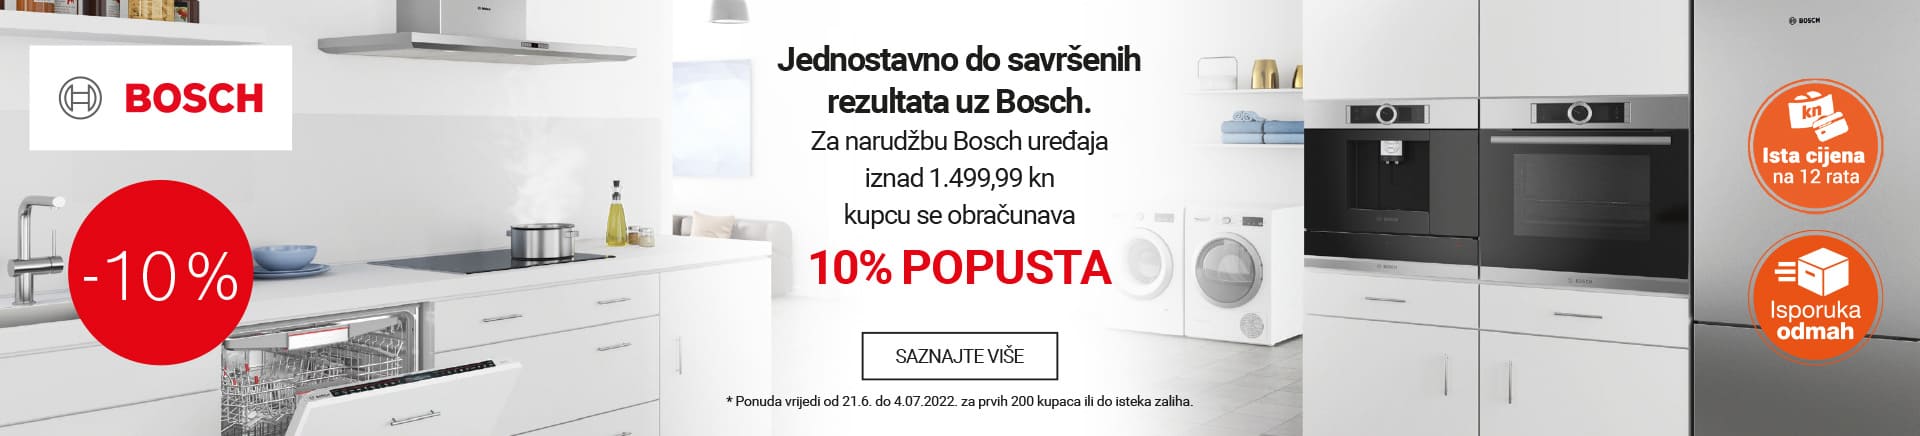 Bosch 10% popusta - Jednostavno do savršenih rezultata